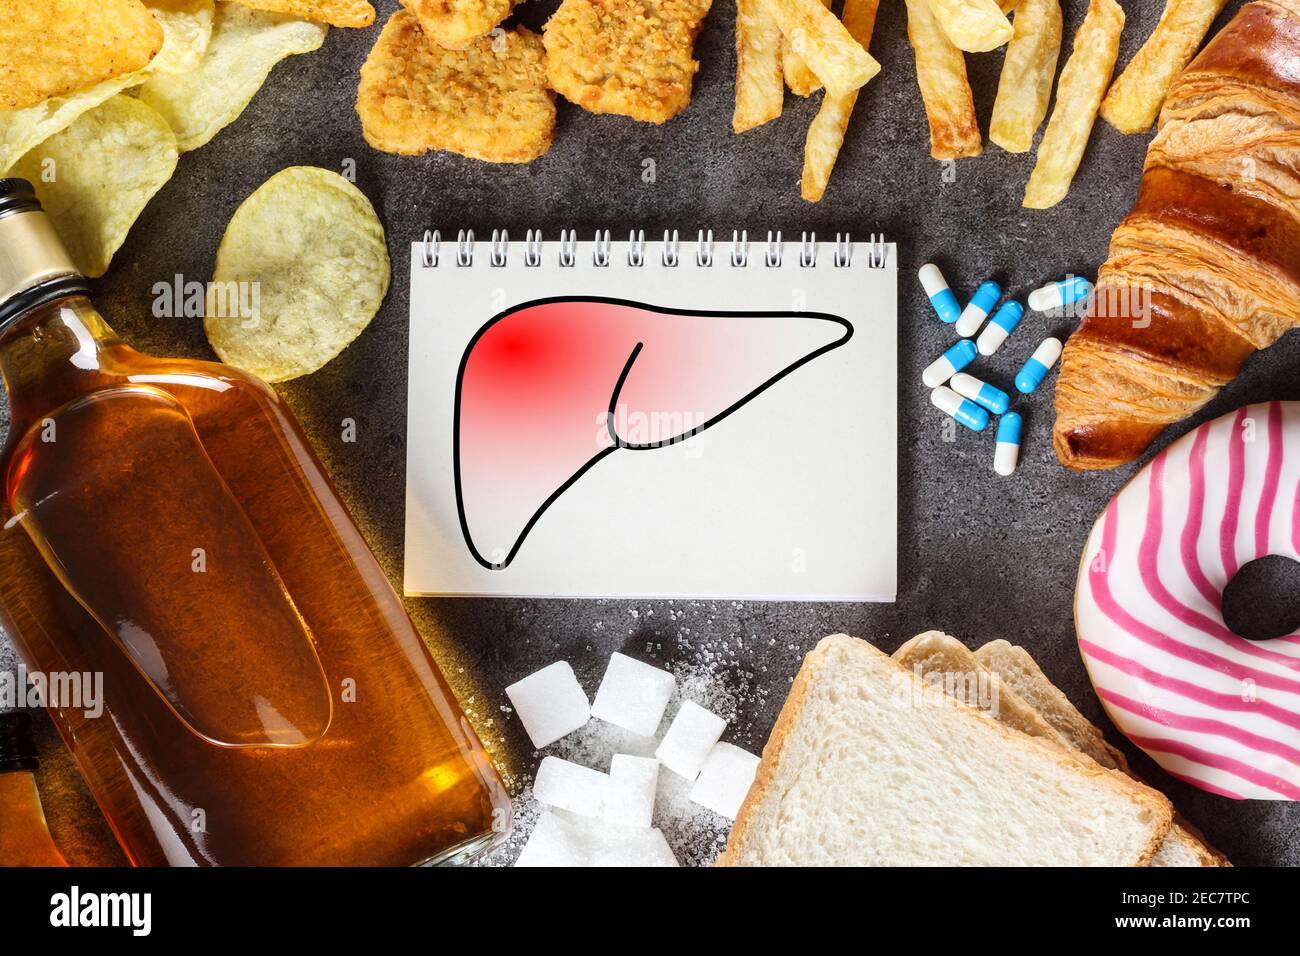 Stile di vita e abitudini malsane - rischio di danni al fegato. Vista dall'alto Foto Stock